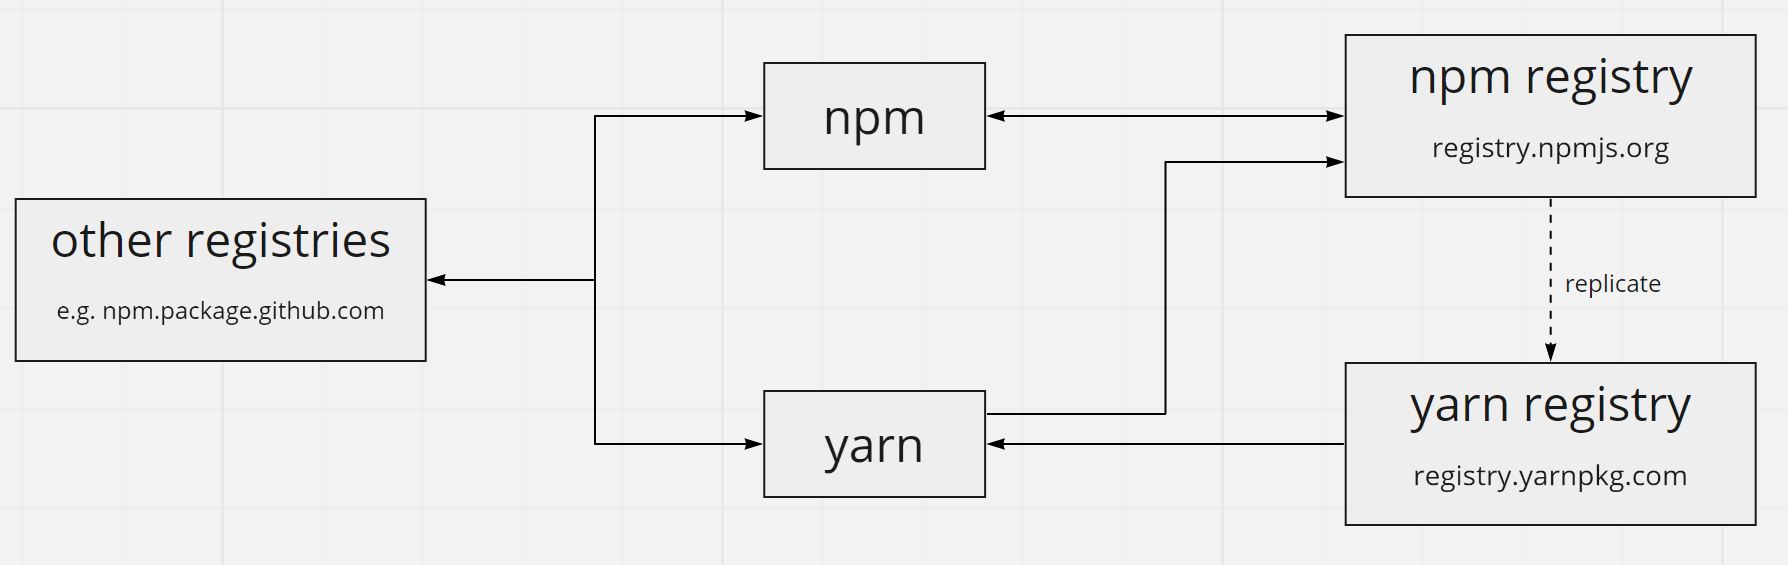 図: npmレジストリとyarnレジストリの関係